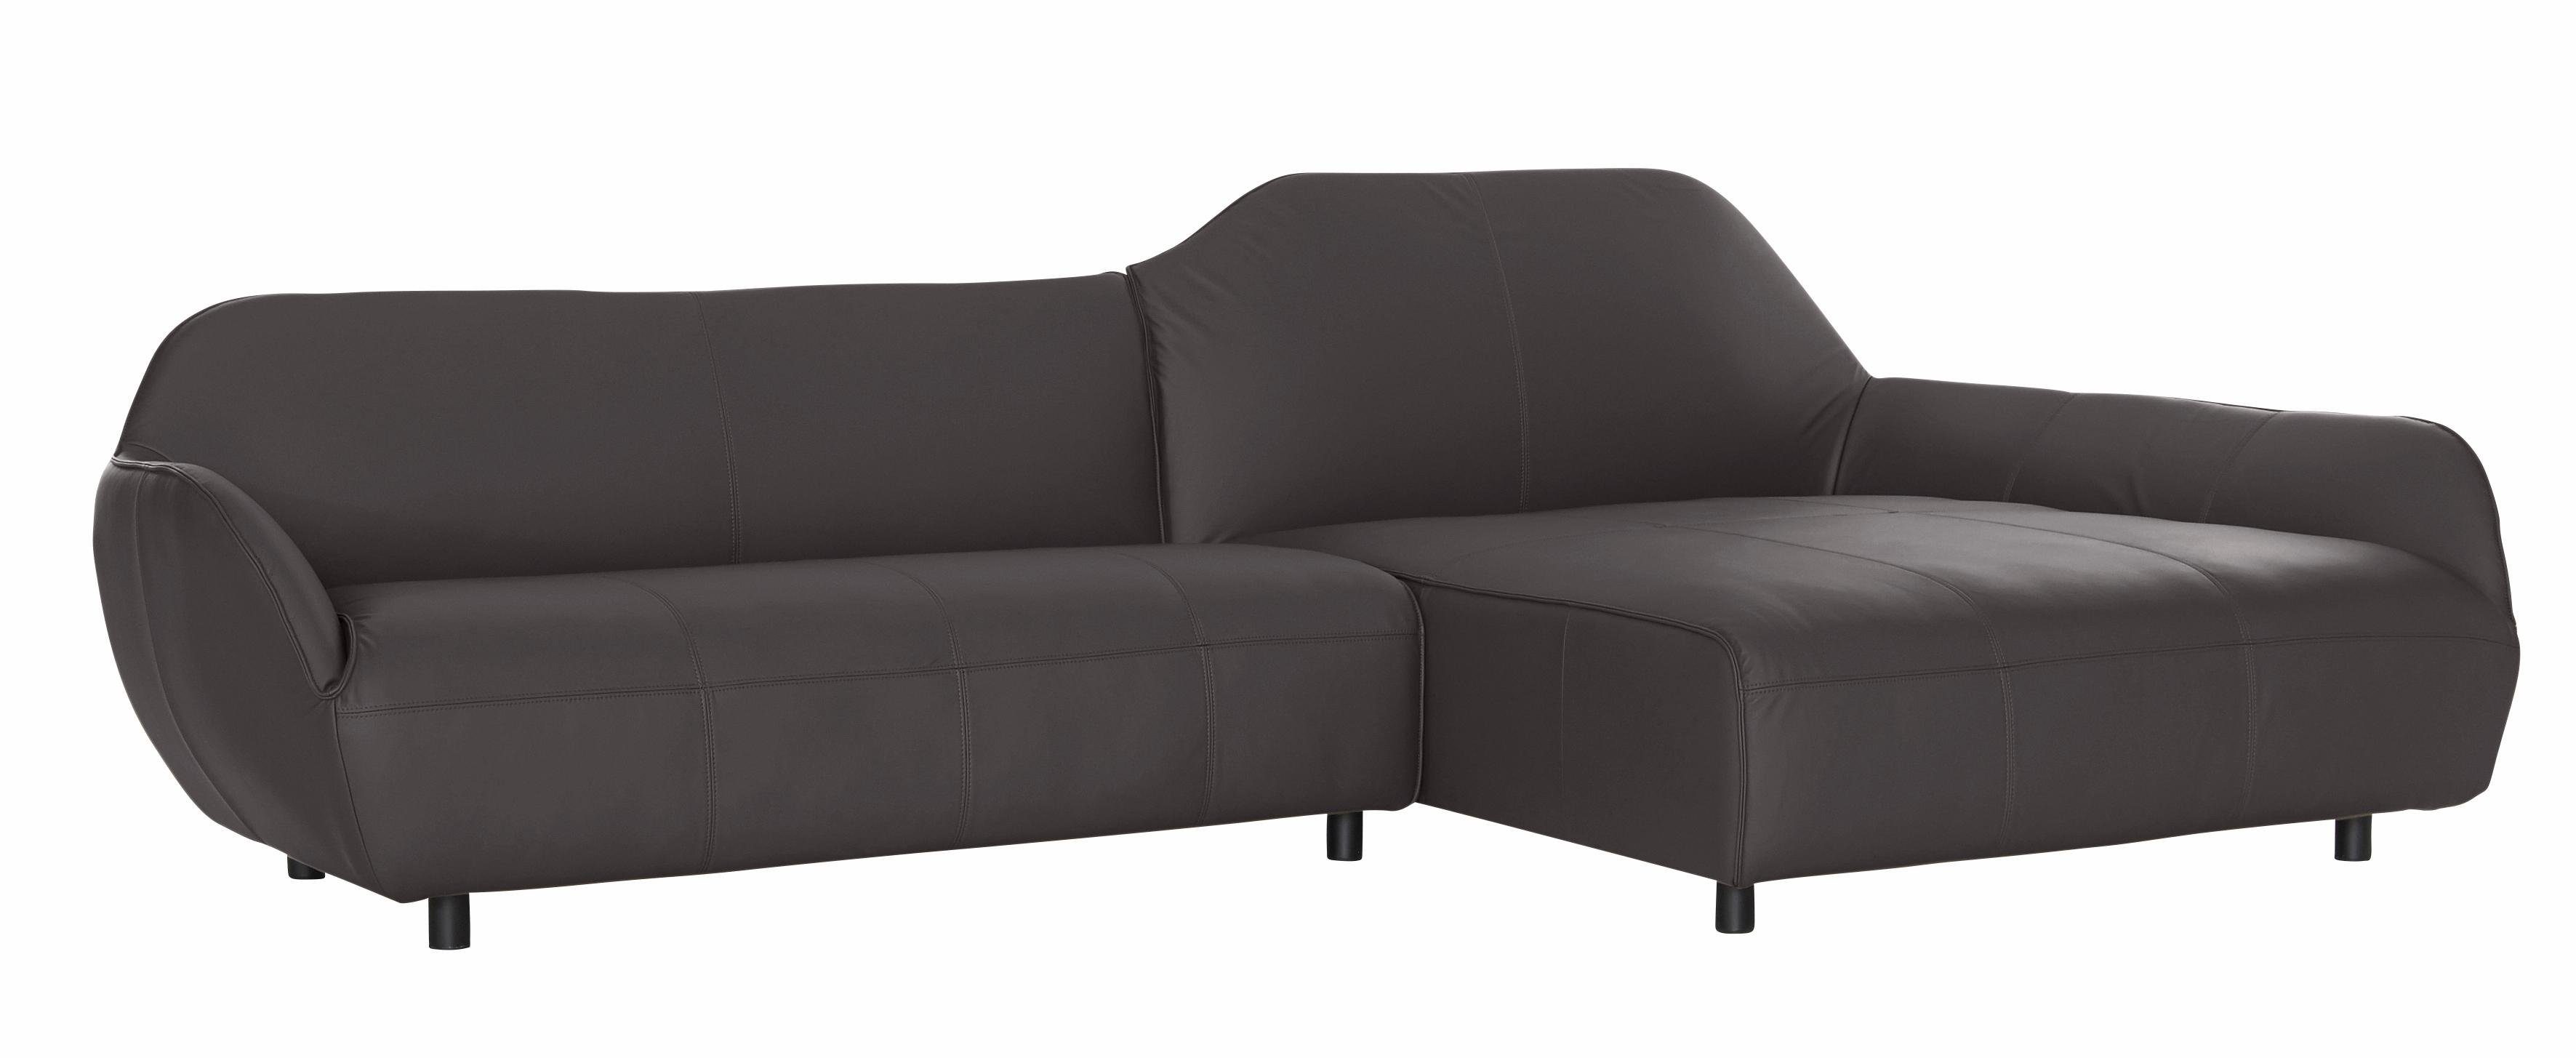 Ecksofa sofa in Bezugsqualitäten hs.480, hülsta 2